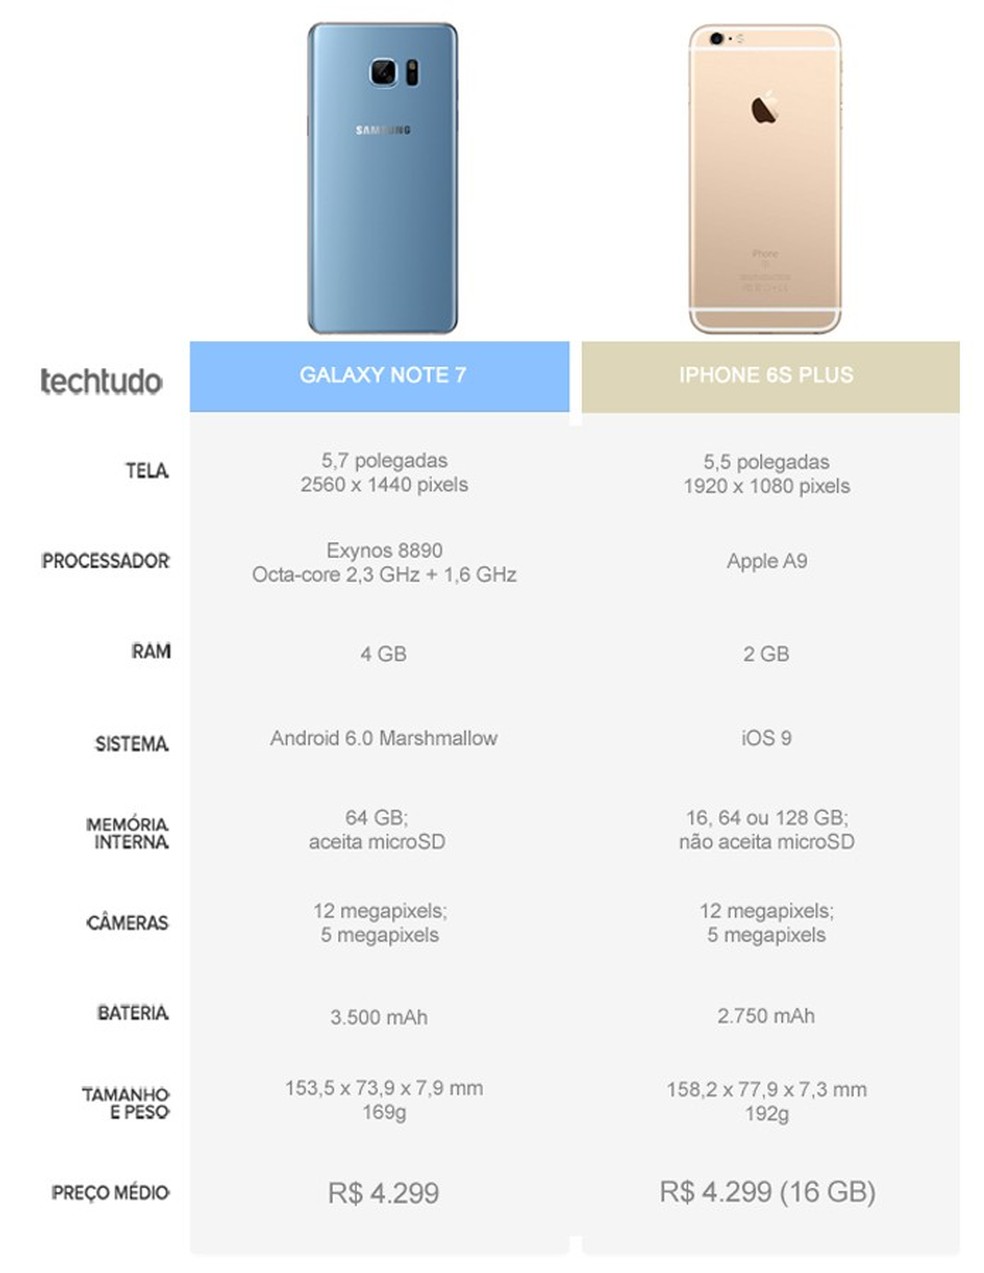 Dobrados, atirados ao chão e para o forno: iPhone 6s ou Galaxy Note 5, qual  é o mais resistente? - Multimédia - SAPO Tek